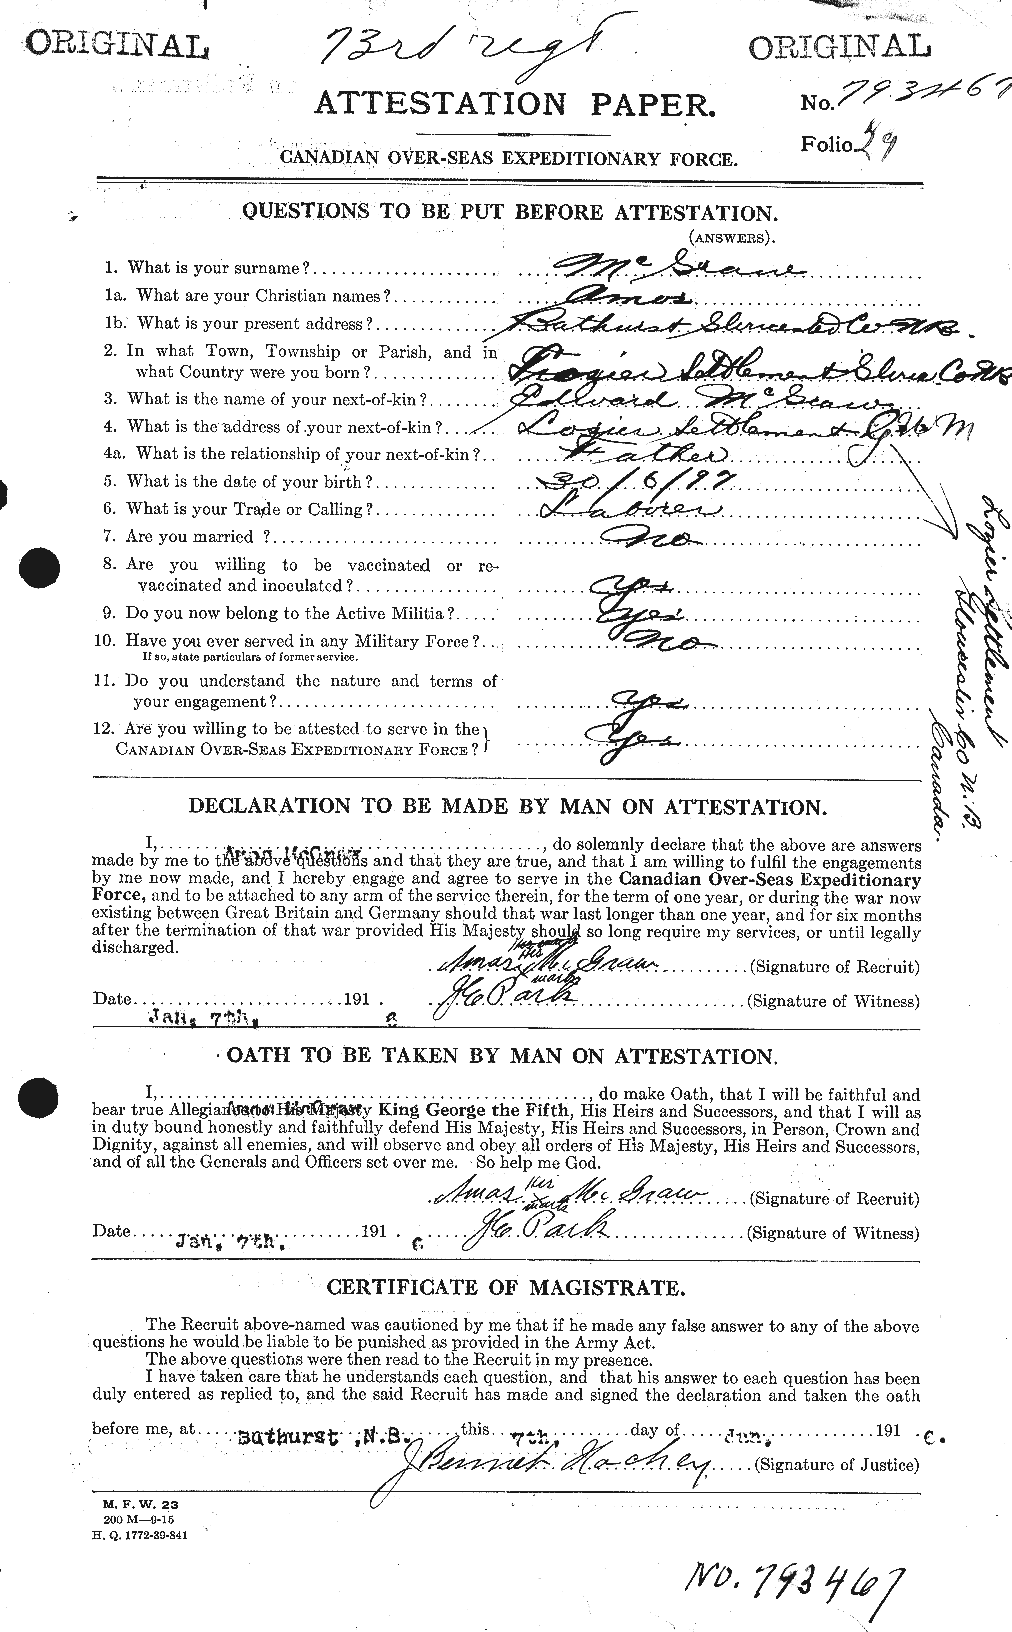 Dossiers du Personnel de la Première Guerre mondiale - CEC 523718a